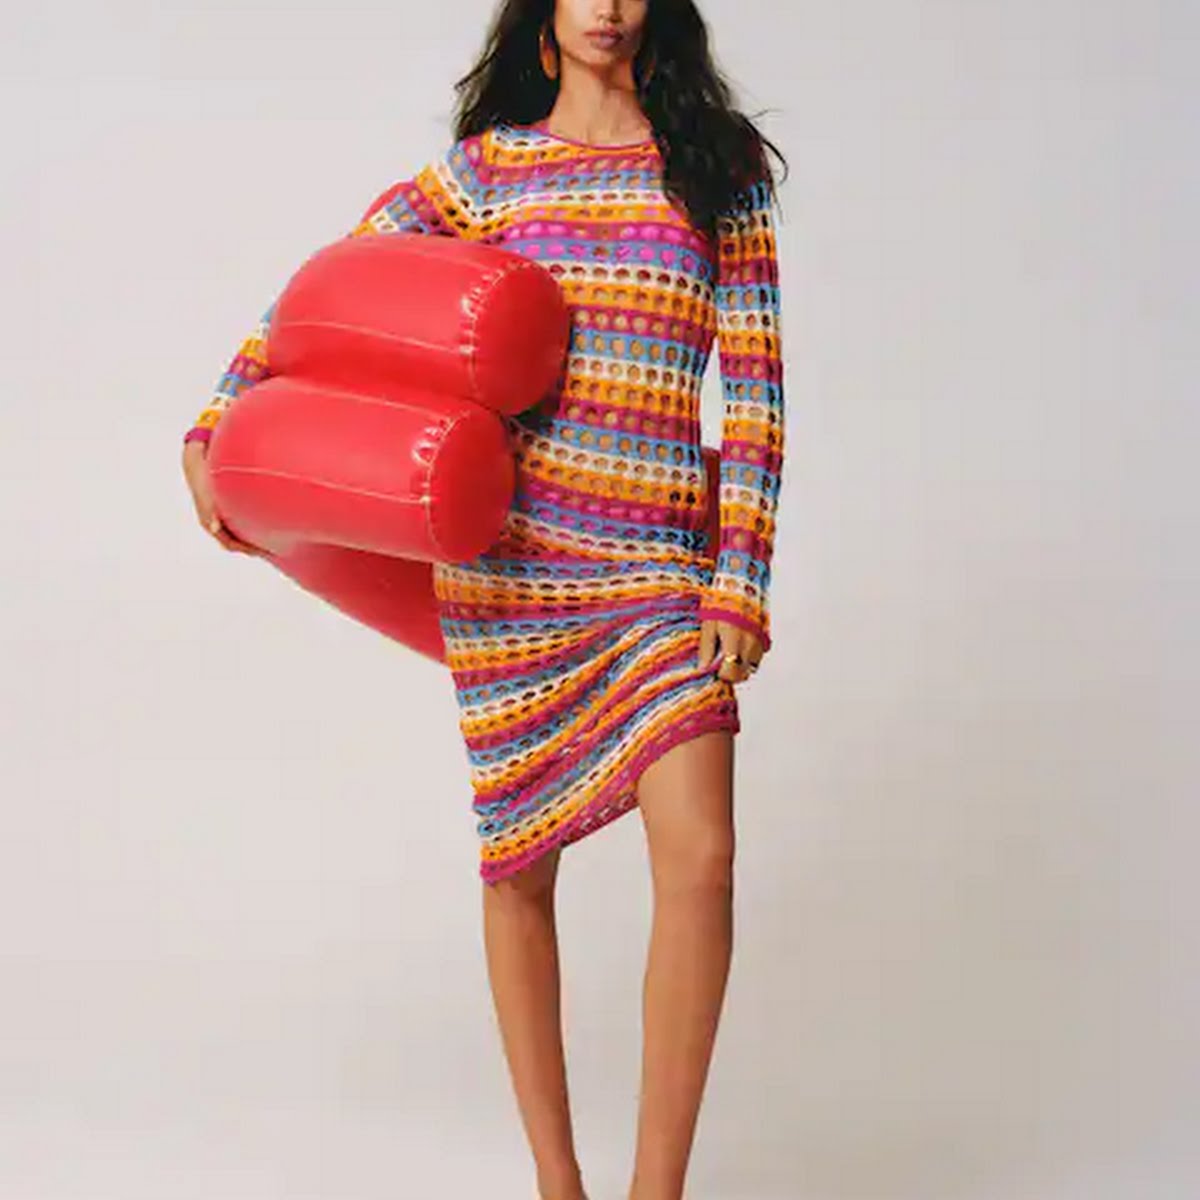 Multi-Coloured Crochet Dress, €59.99